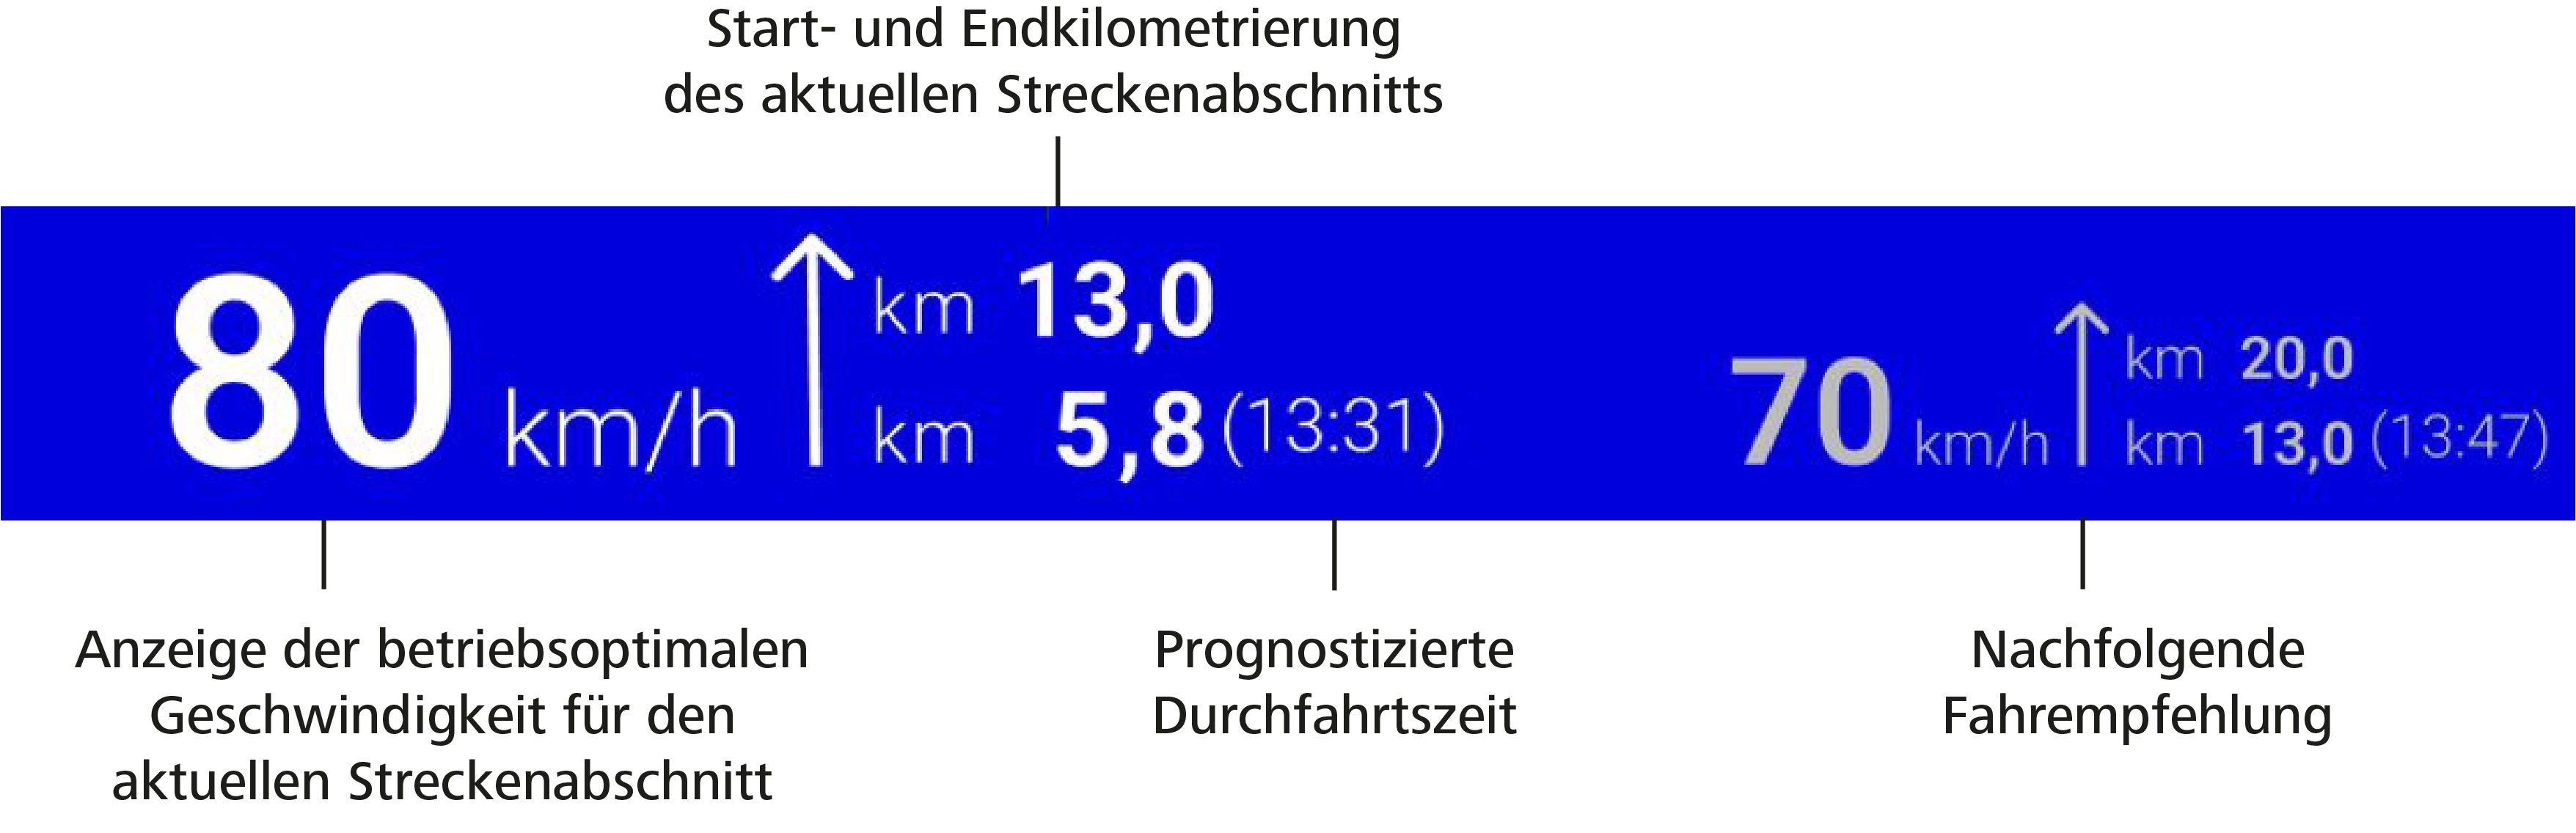 Grafik einer Fahrempfehlung auf einem blauen Rechteck mit empfohlener Geschwindigkeit und Kilometerangaben